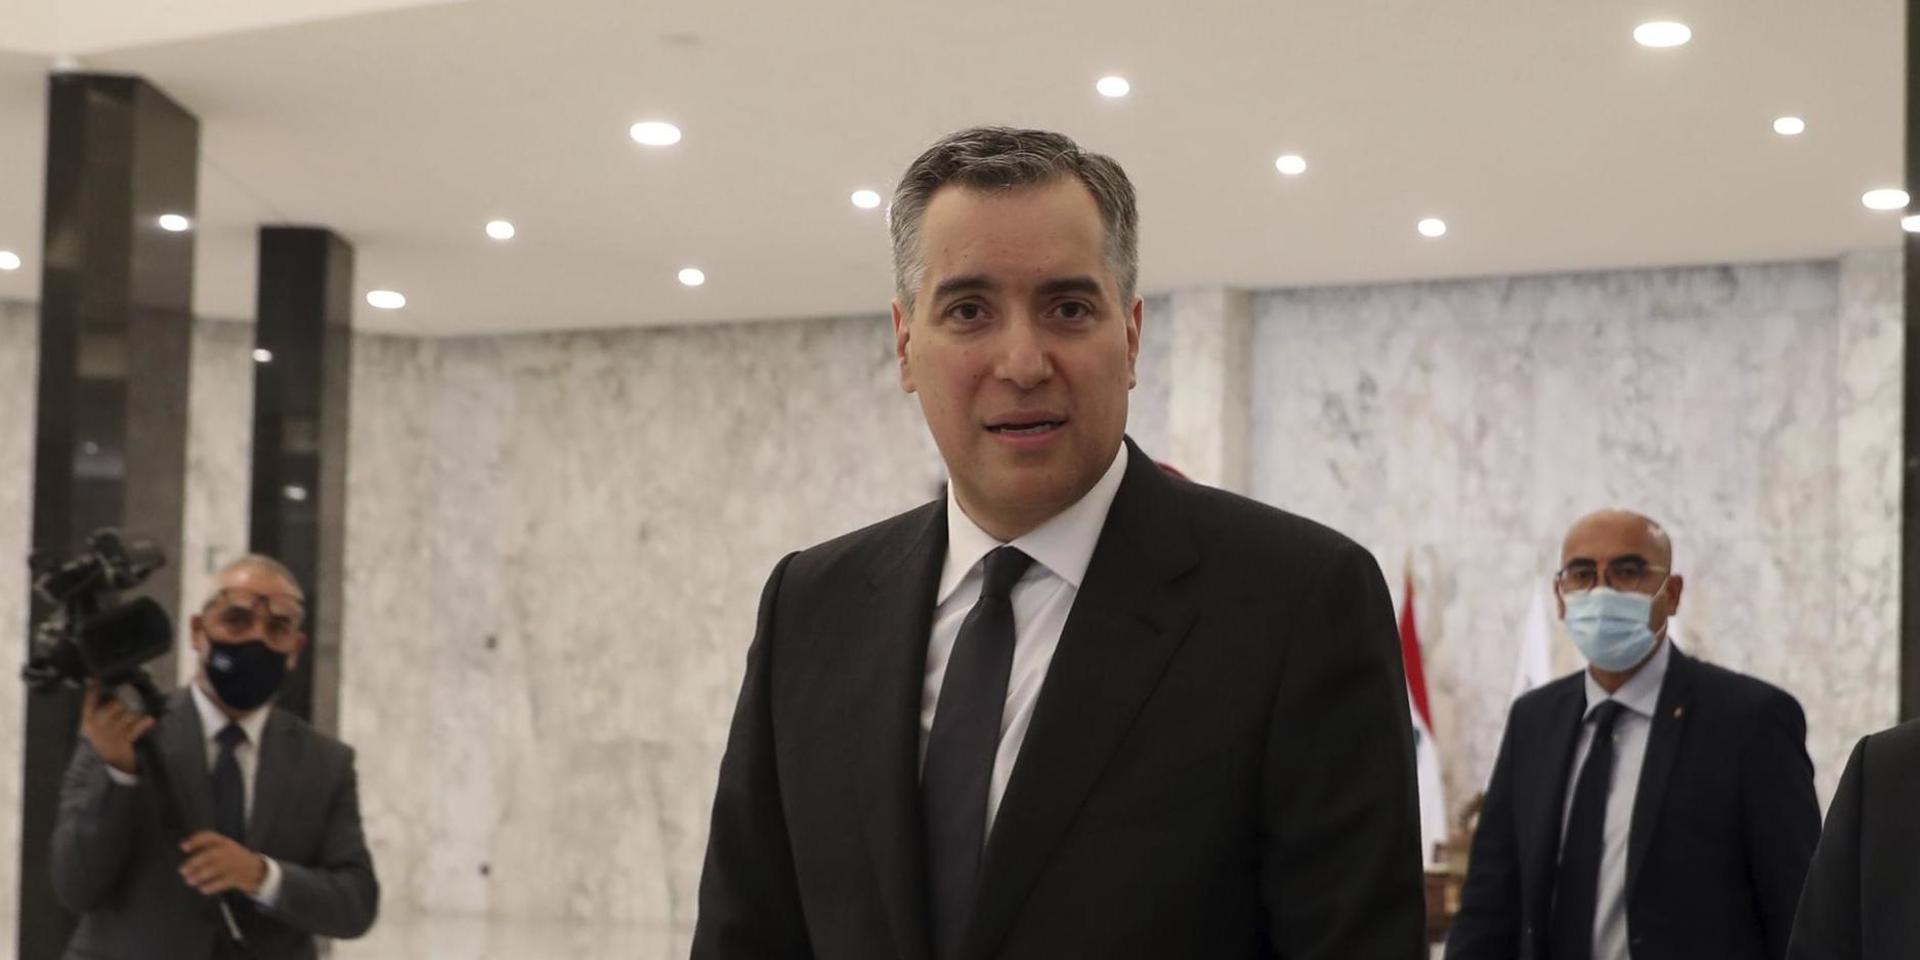 Libanons ambassadör i Tyskland, Mustafa Adib, utsågs under måndagen till ny regeringsbildare.